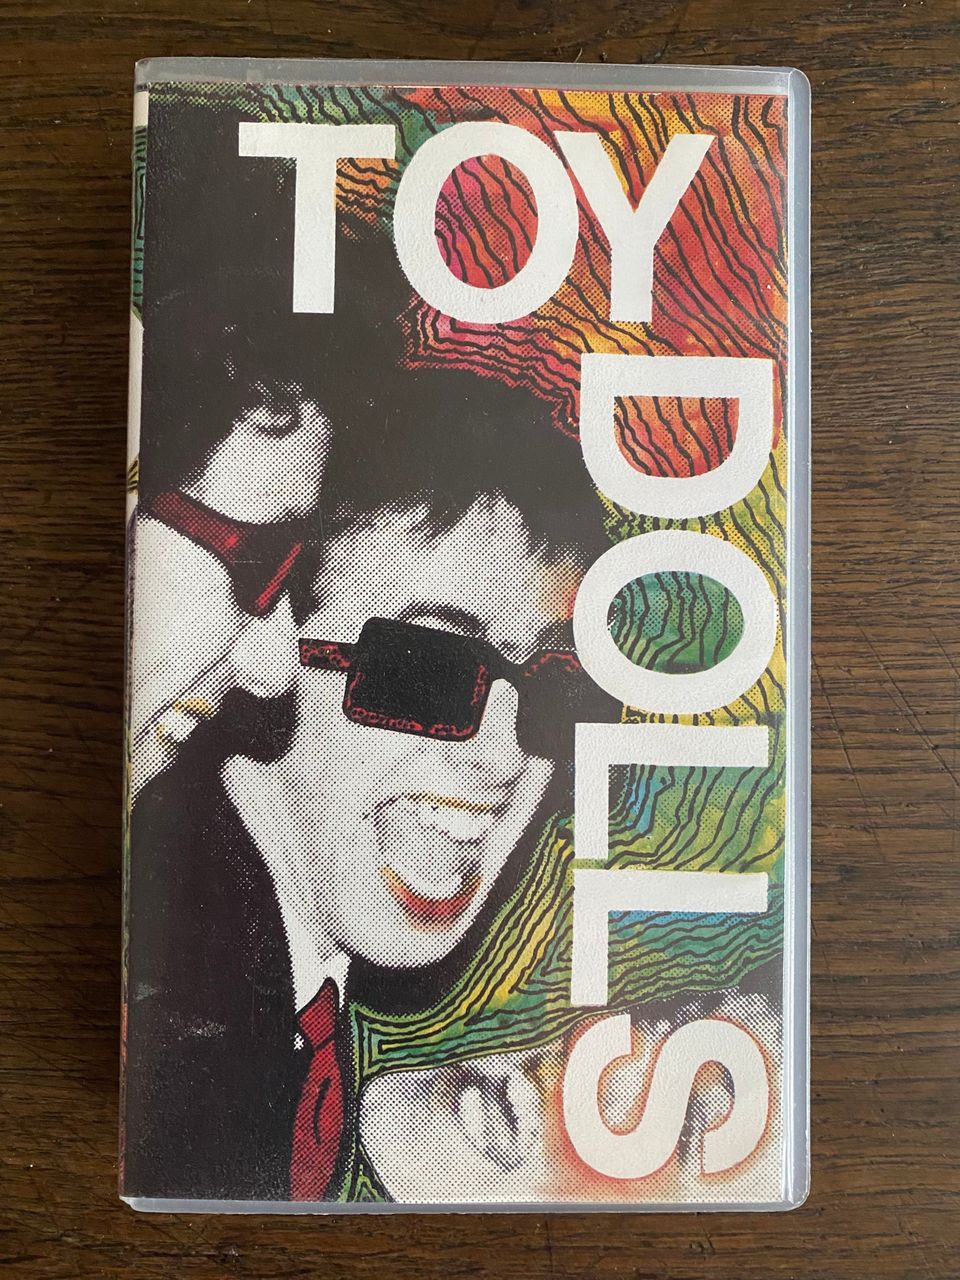 Toy Dolls 1984 VHS